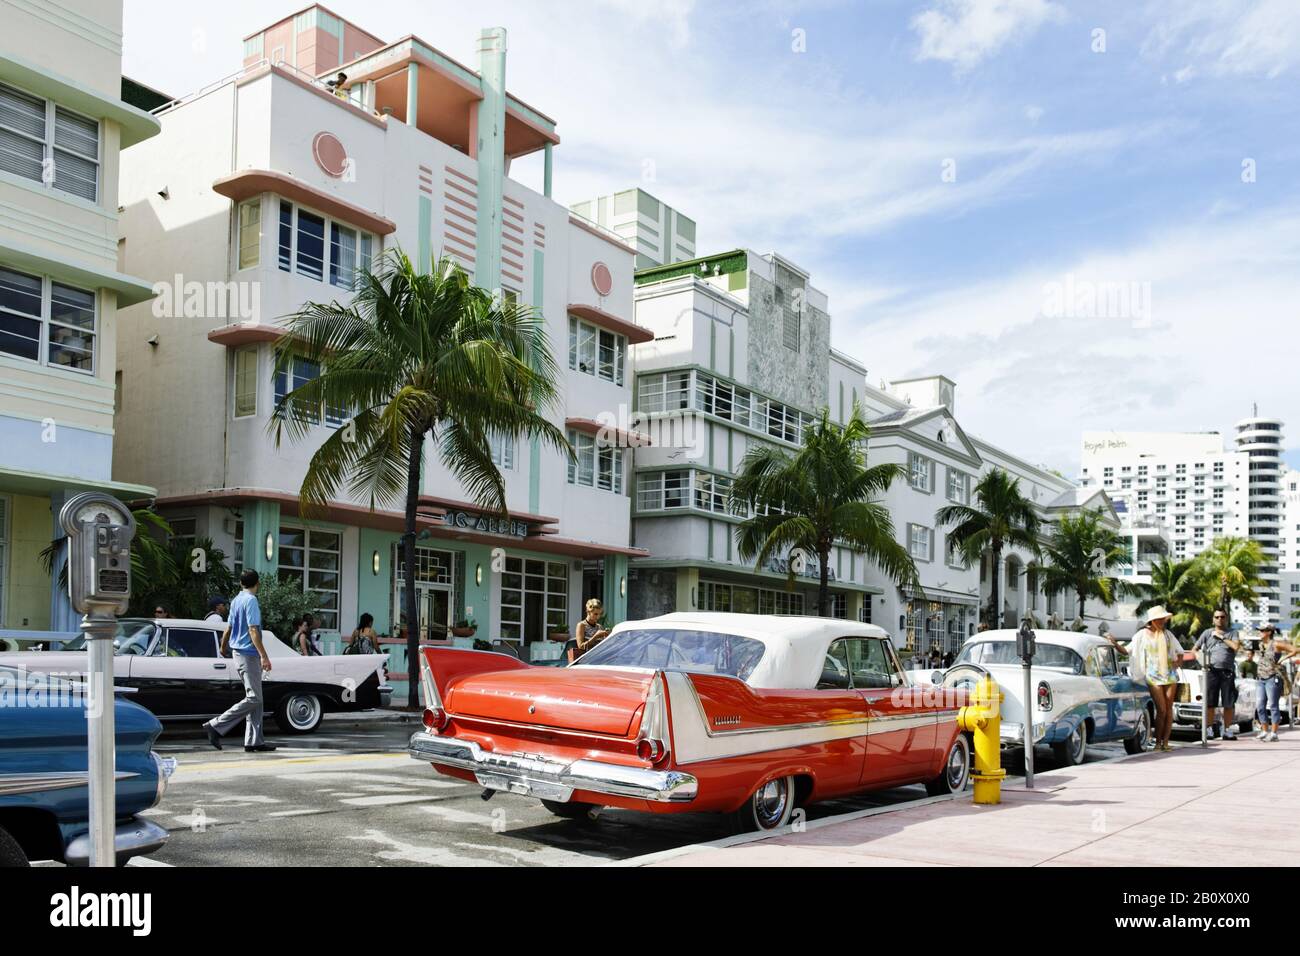 Plymouth Belvedere Convertible, año 1957, años cincuenta, coche clásico americano, Ocean Drive, Miami South Beach, Distrito Art Deco, Florida, Estados Unidos, Foto de stock